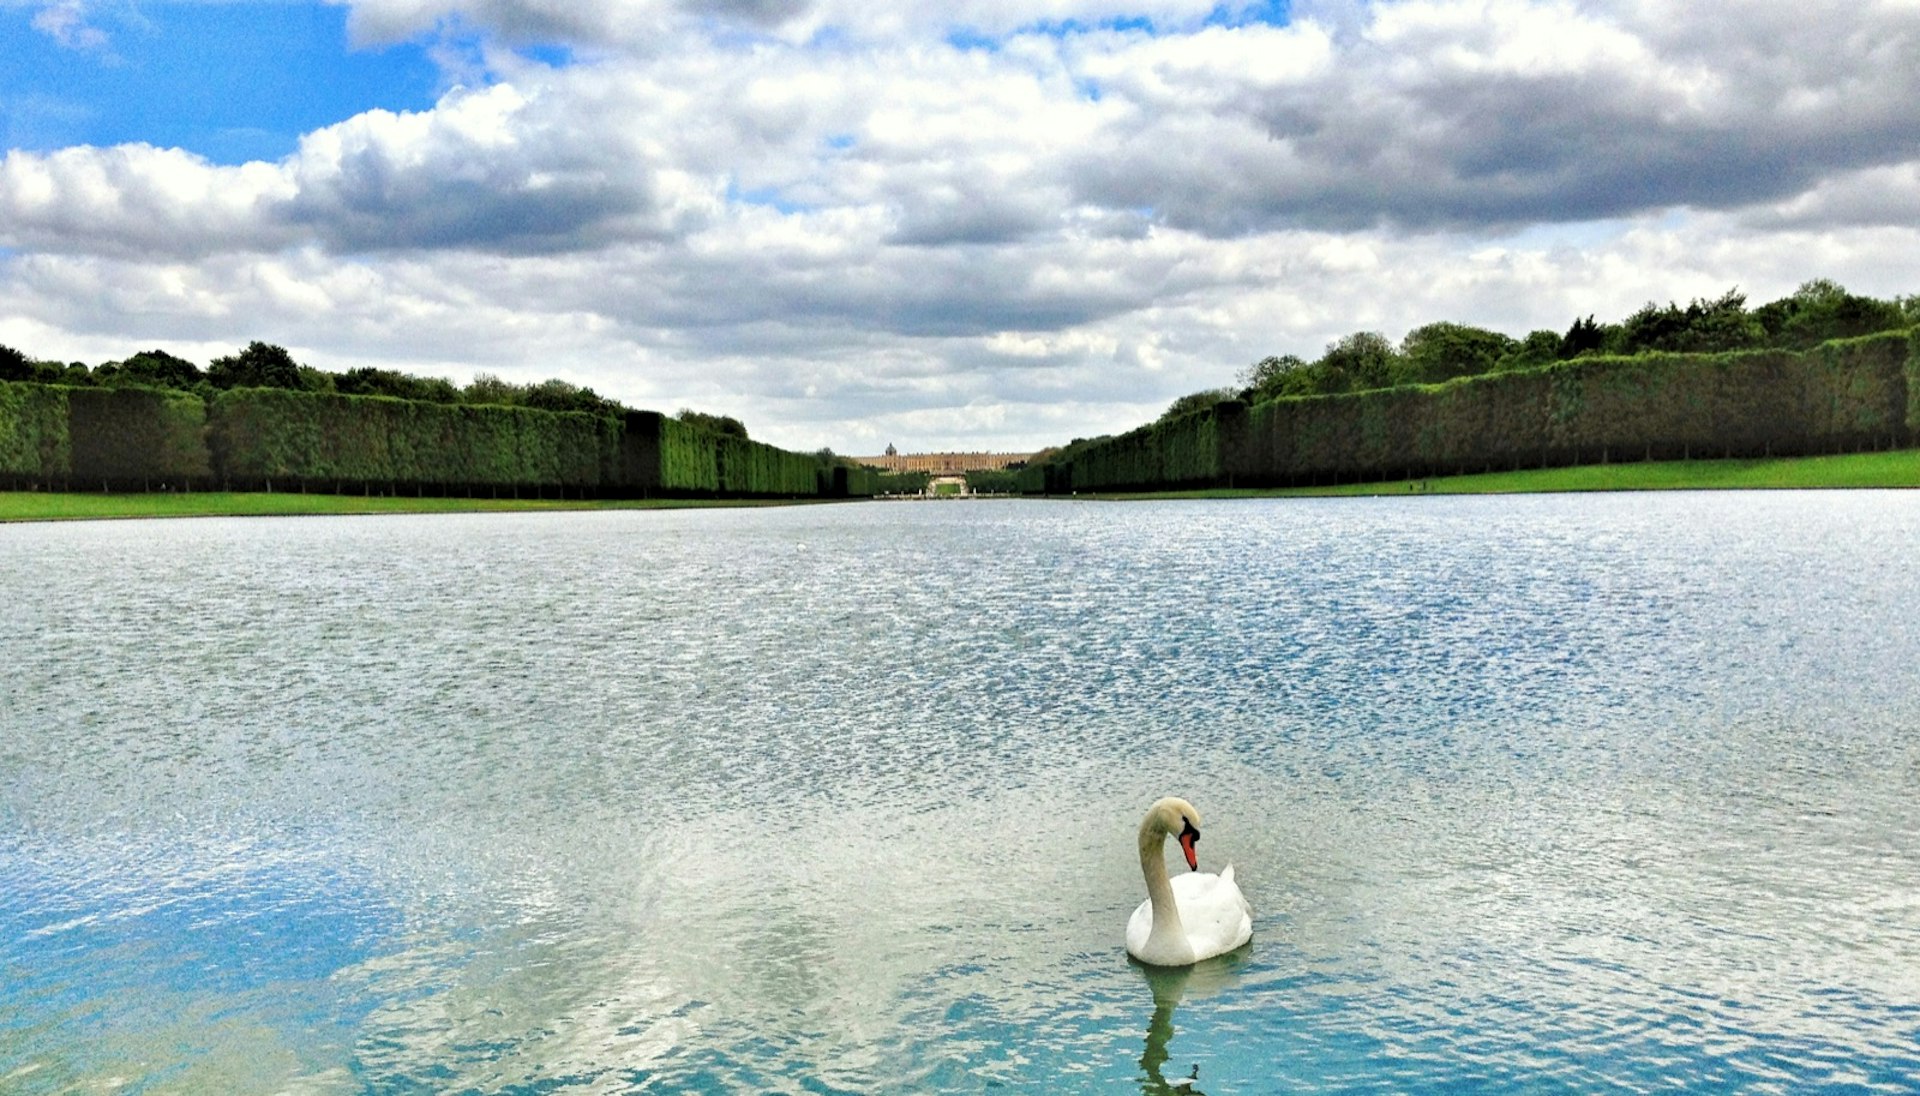 En vit simmar simmar ensam på en damm framför Versailles 